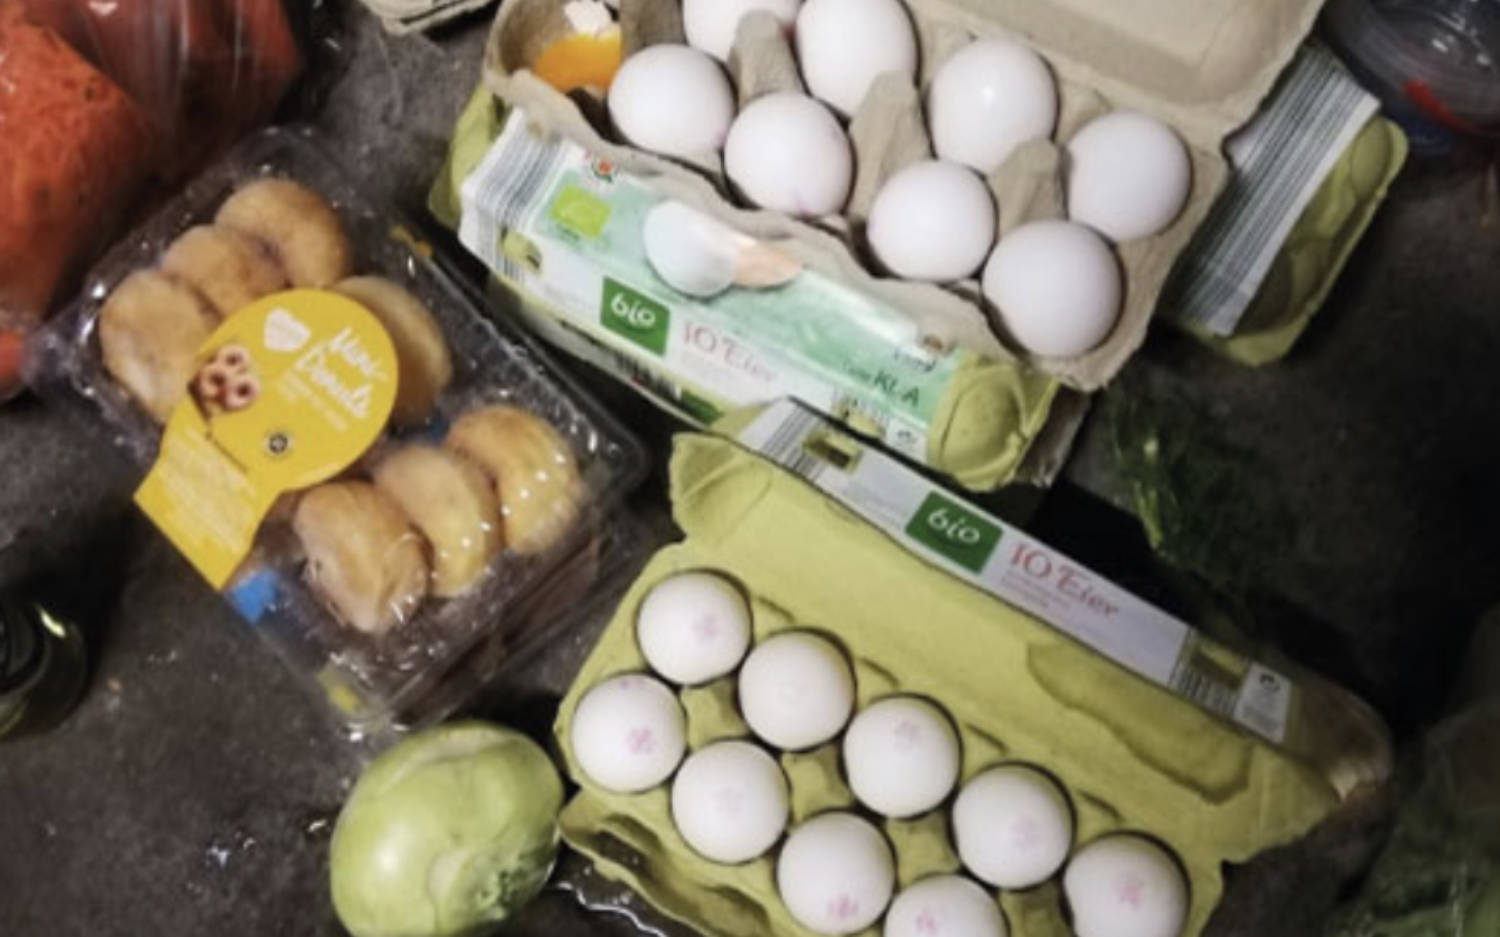 Eier und Gebäck in dem Container eines Supermarktes / ©wirfuerdieerde 